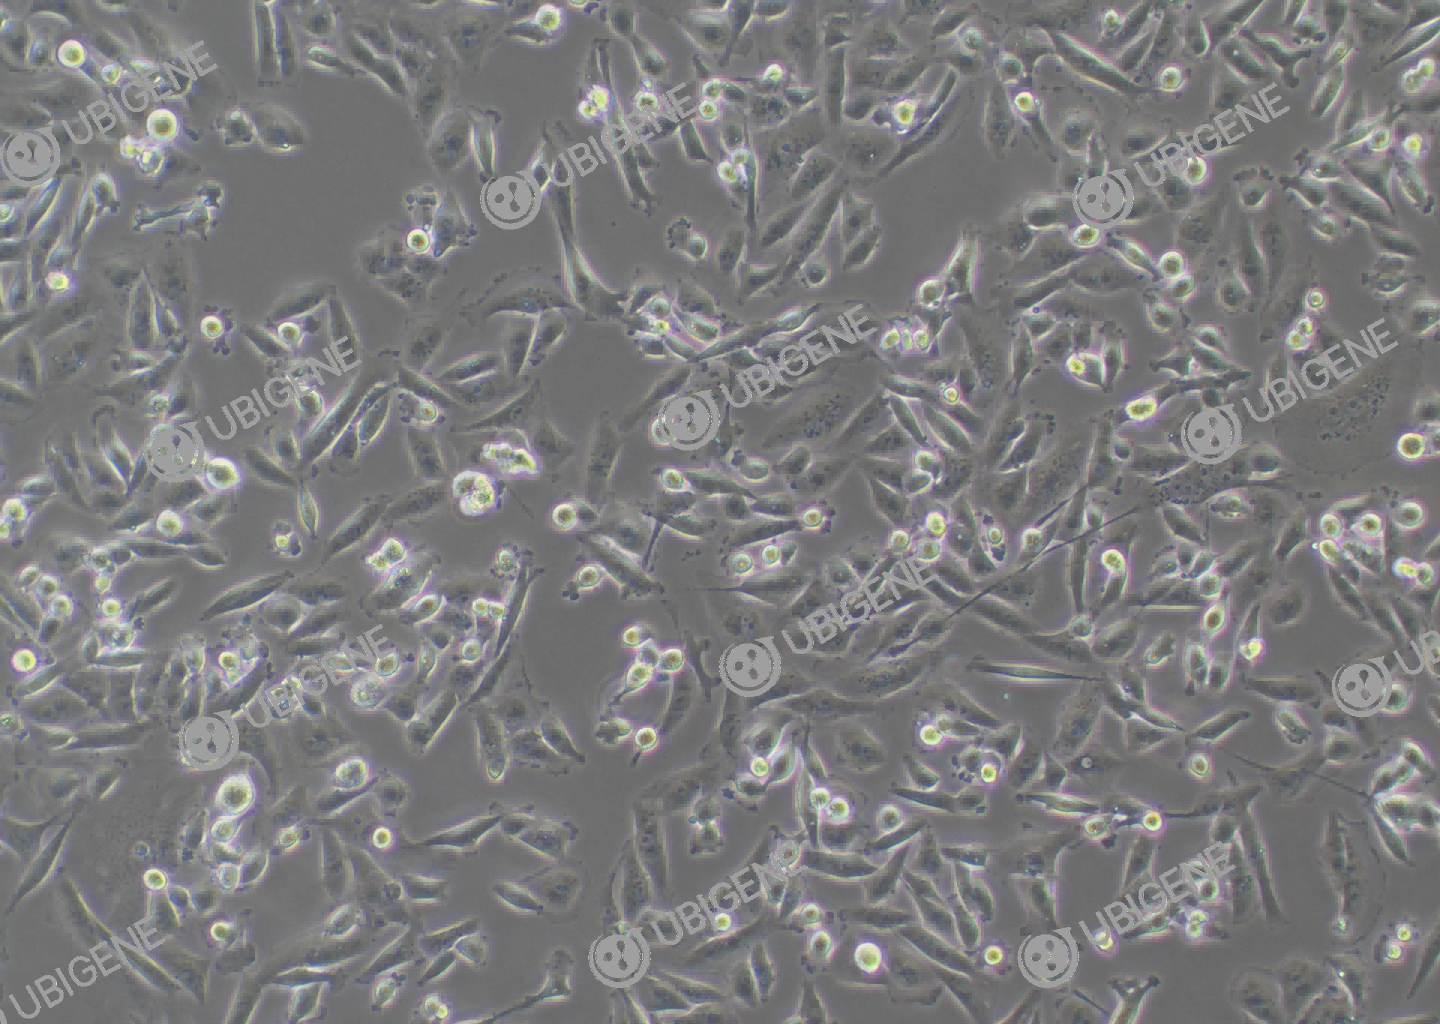 人乳腺癌细胞(MDA-MB-231)细胞形态培养图